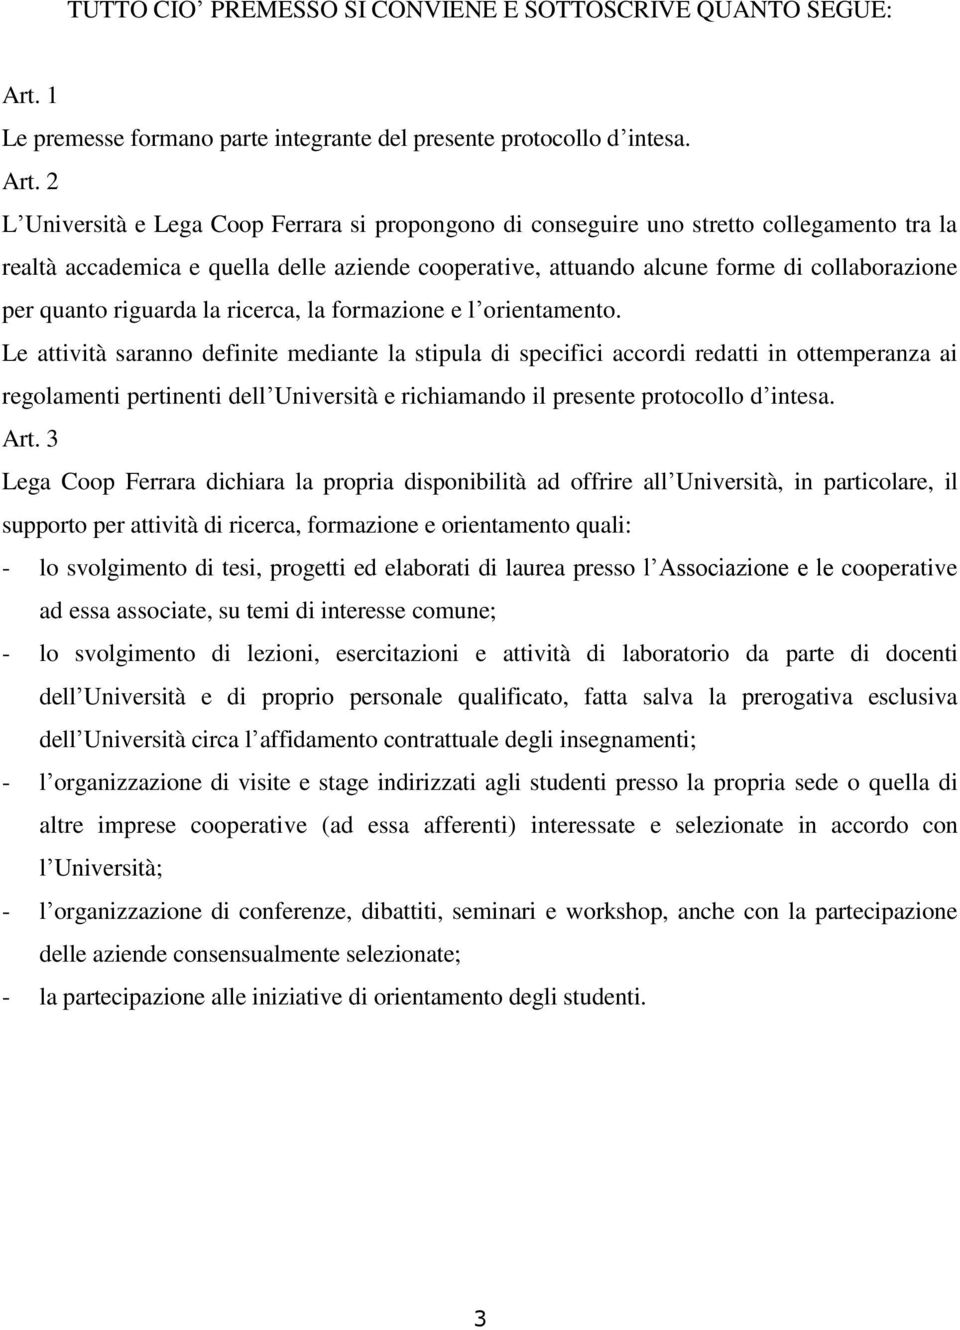 2 L Università e Lega Coop Ferrara si propongono di conseguire uno stretto collegamento tra la realtà accademica e quella delle aziende cooperative, attuando alcune forme di collaborazione per quanto